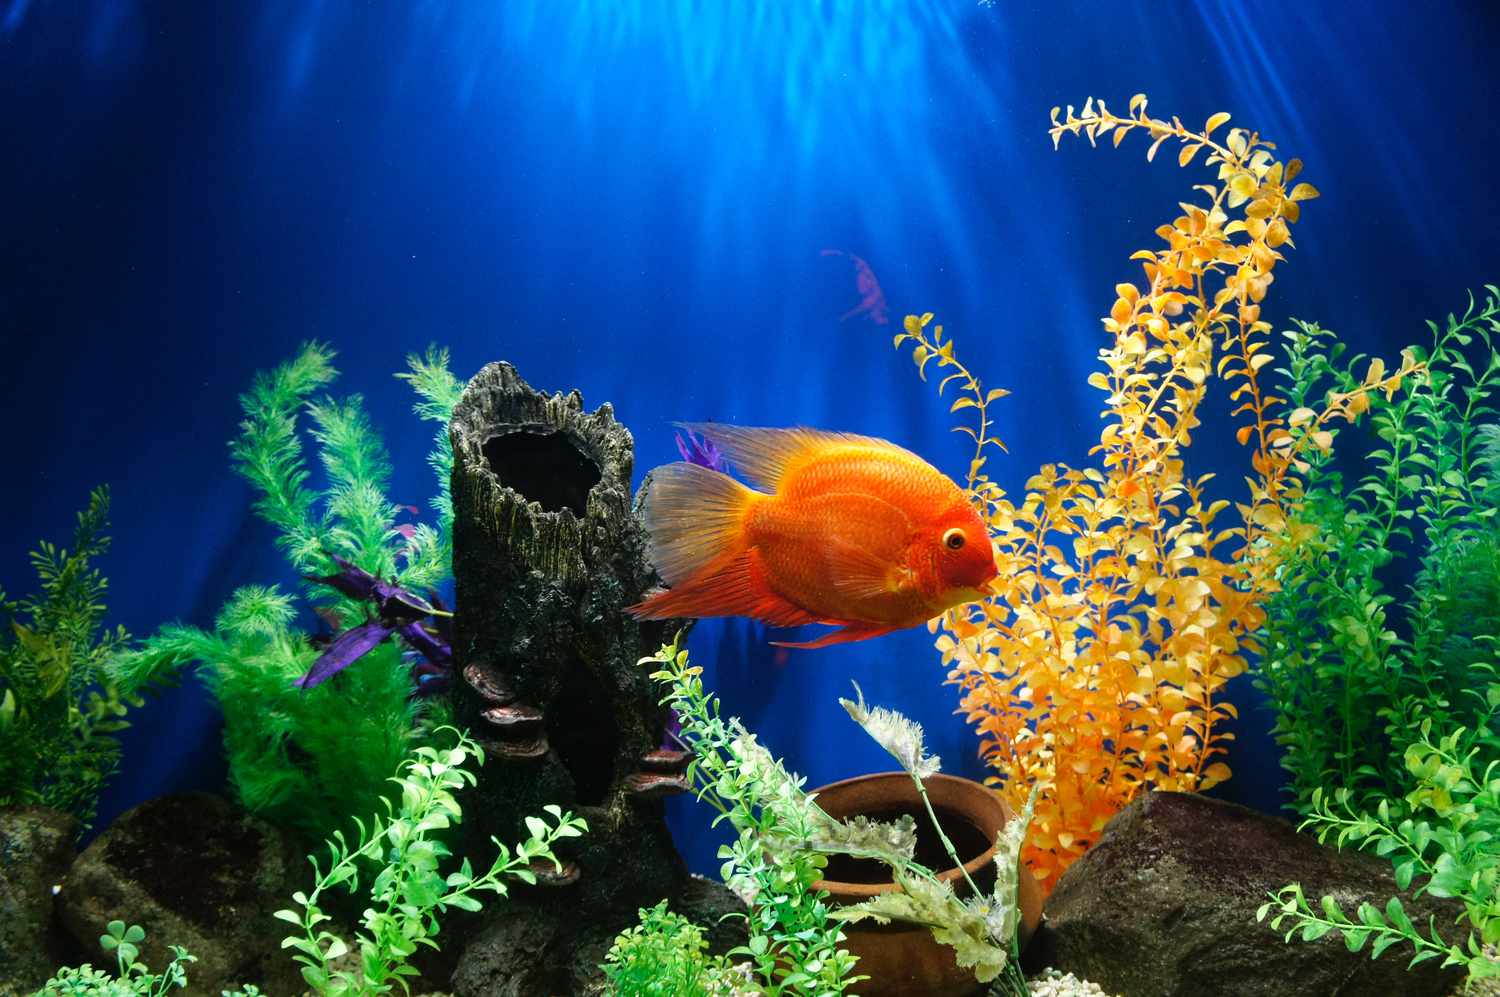 peixe dourado em um aquário com plantas coloridas